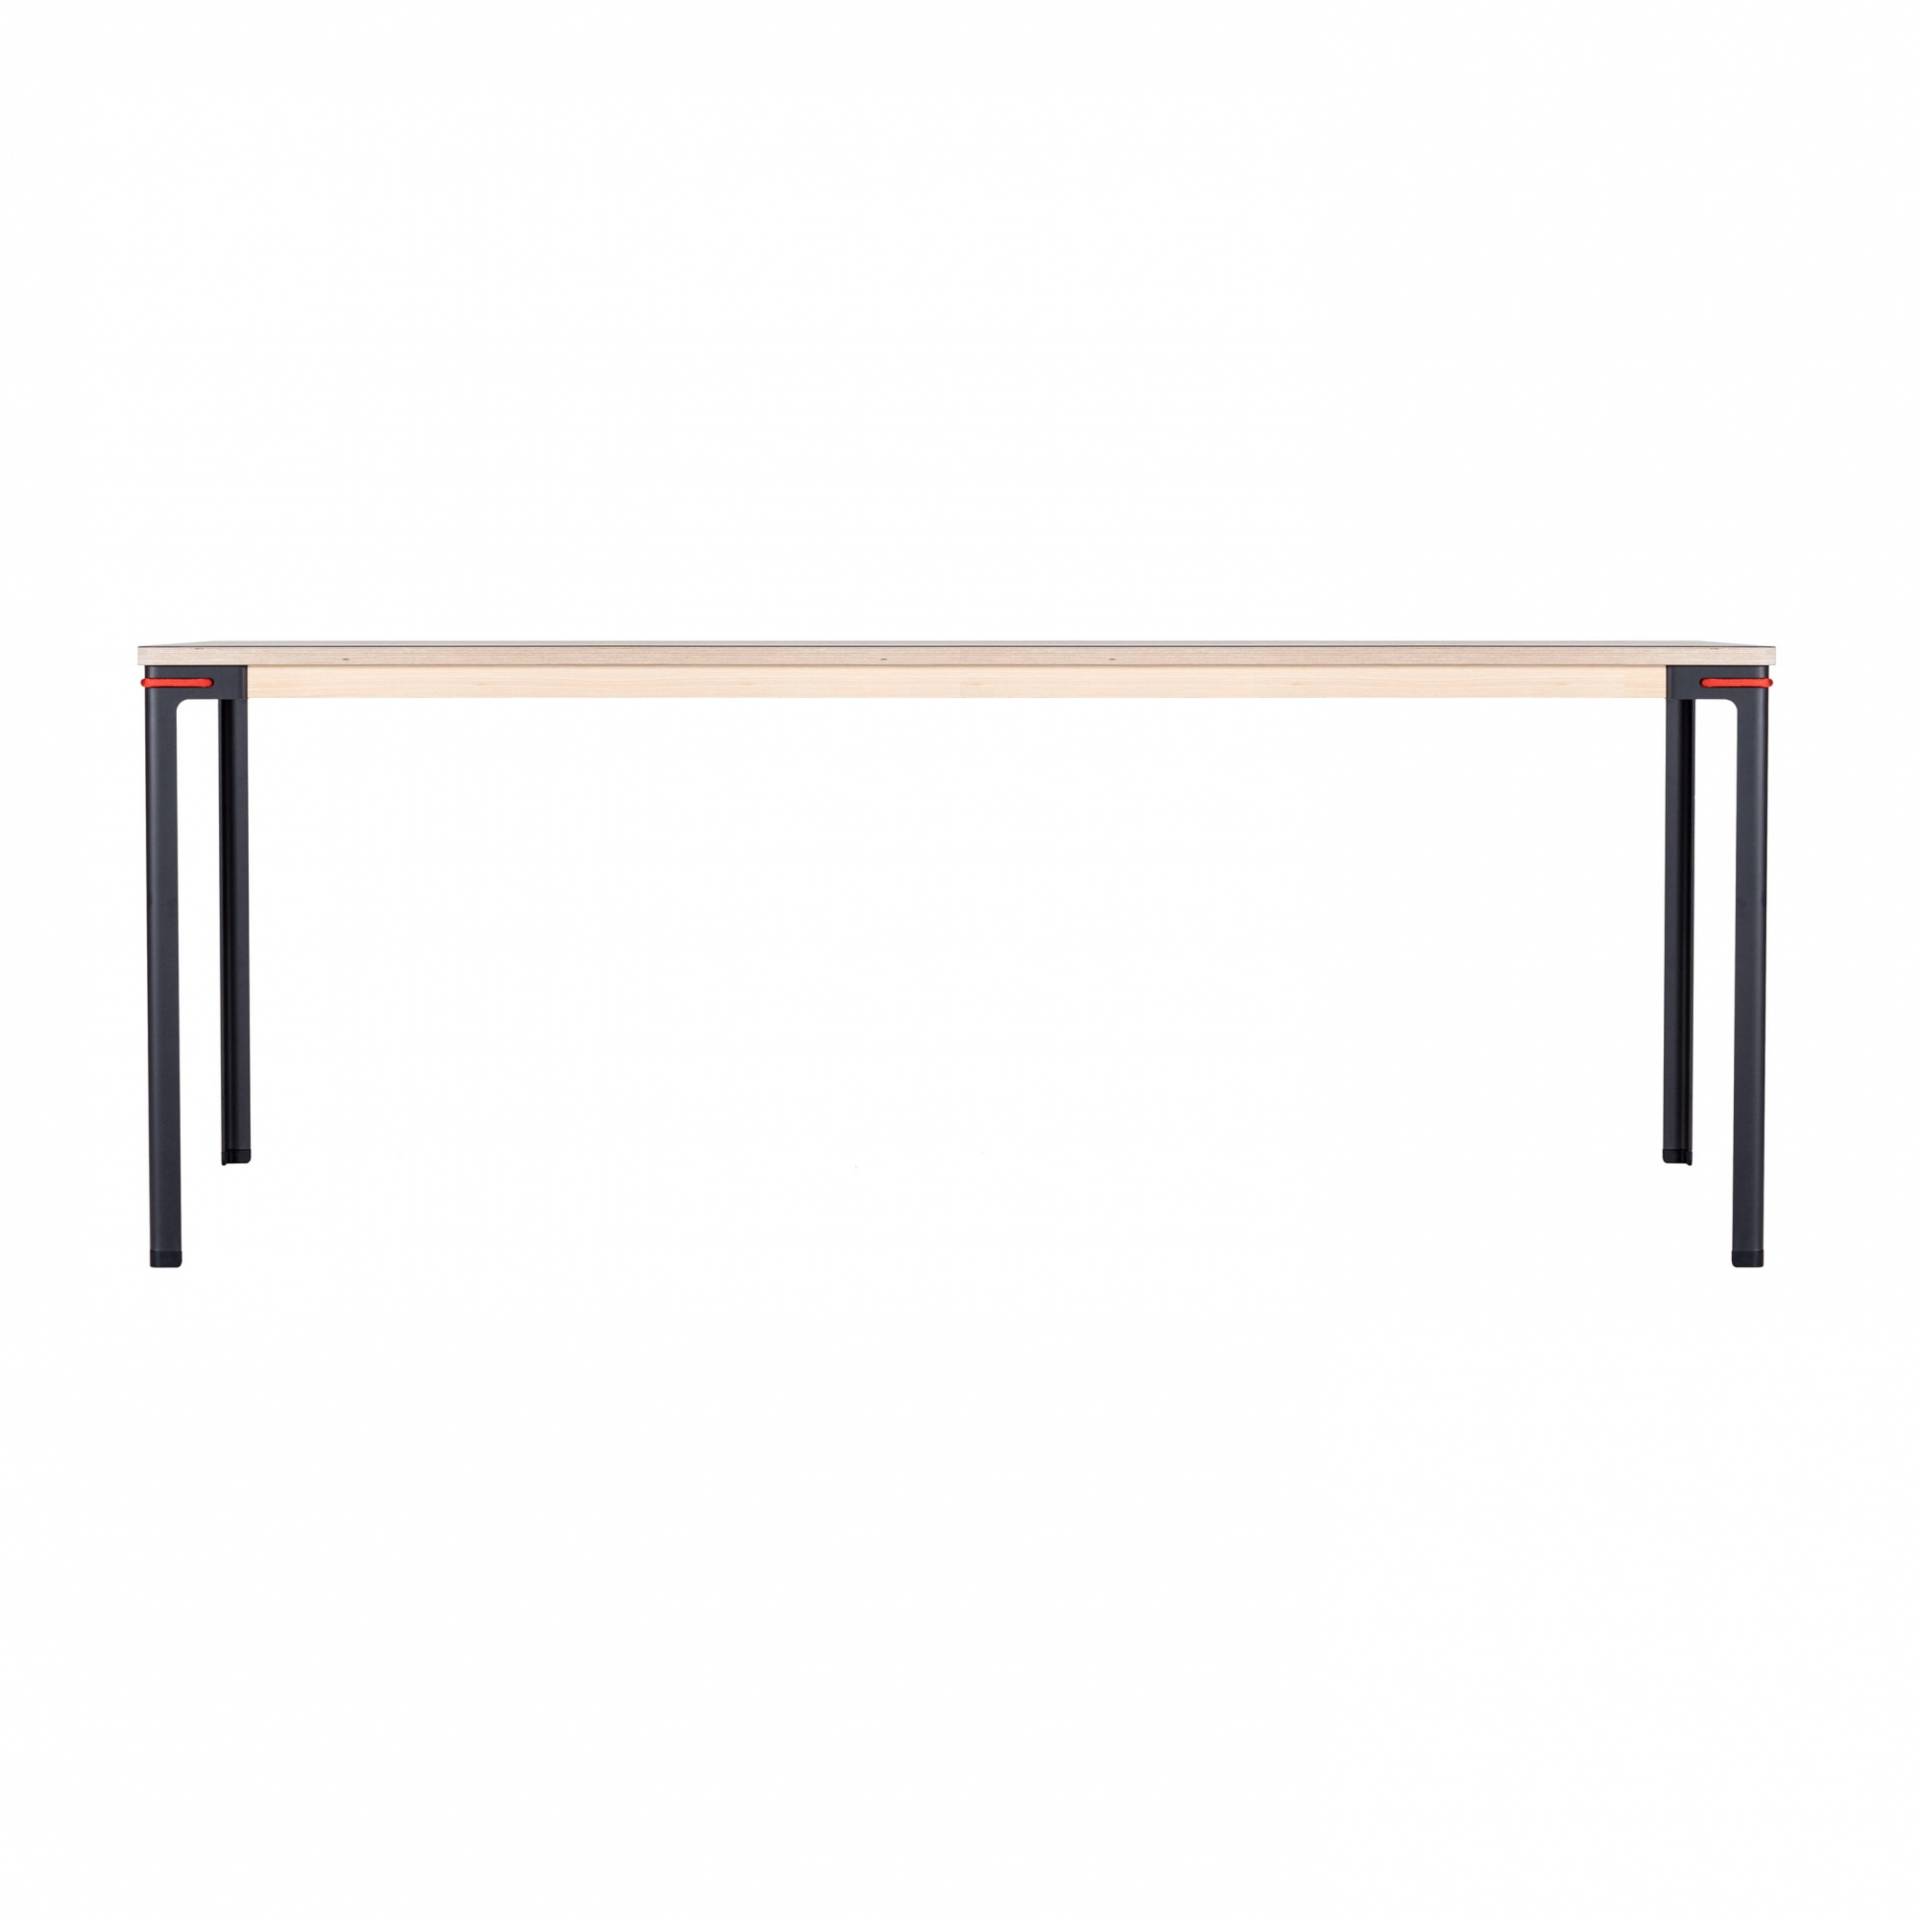 Moormann - Seiltänzer Tisch rechteckig 90x190cm - Linoleum schwarz/rotes Seil/Zarge esche/H 75cm/Gestell Stahl nitriert von Moormann